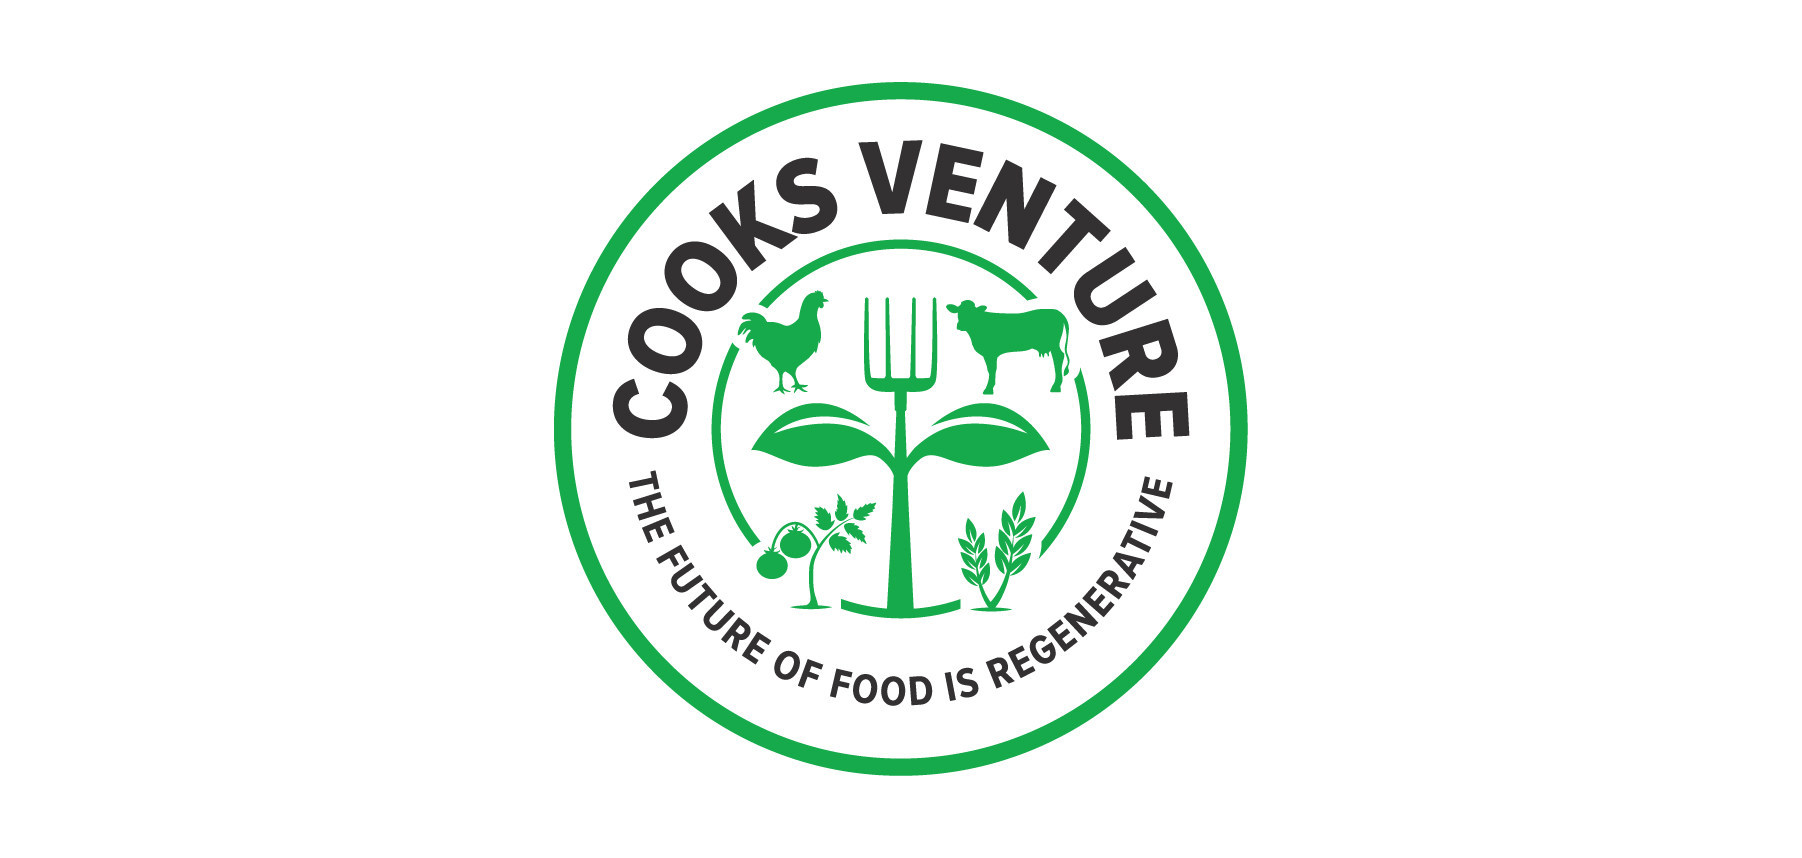 Cooks Venture Logo